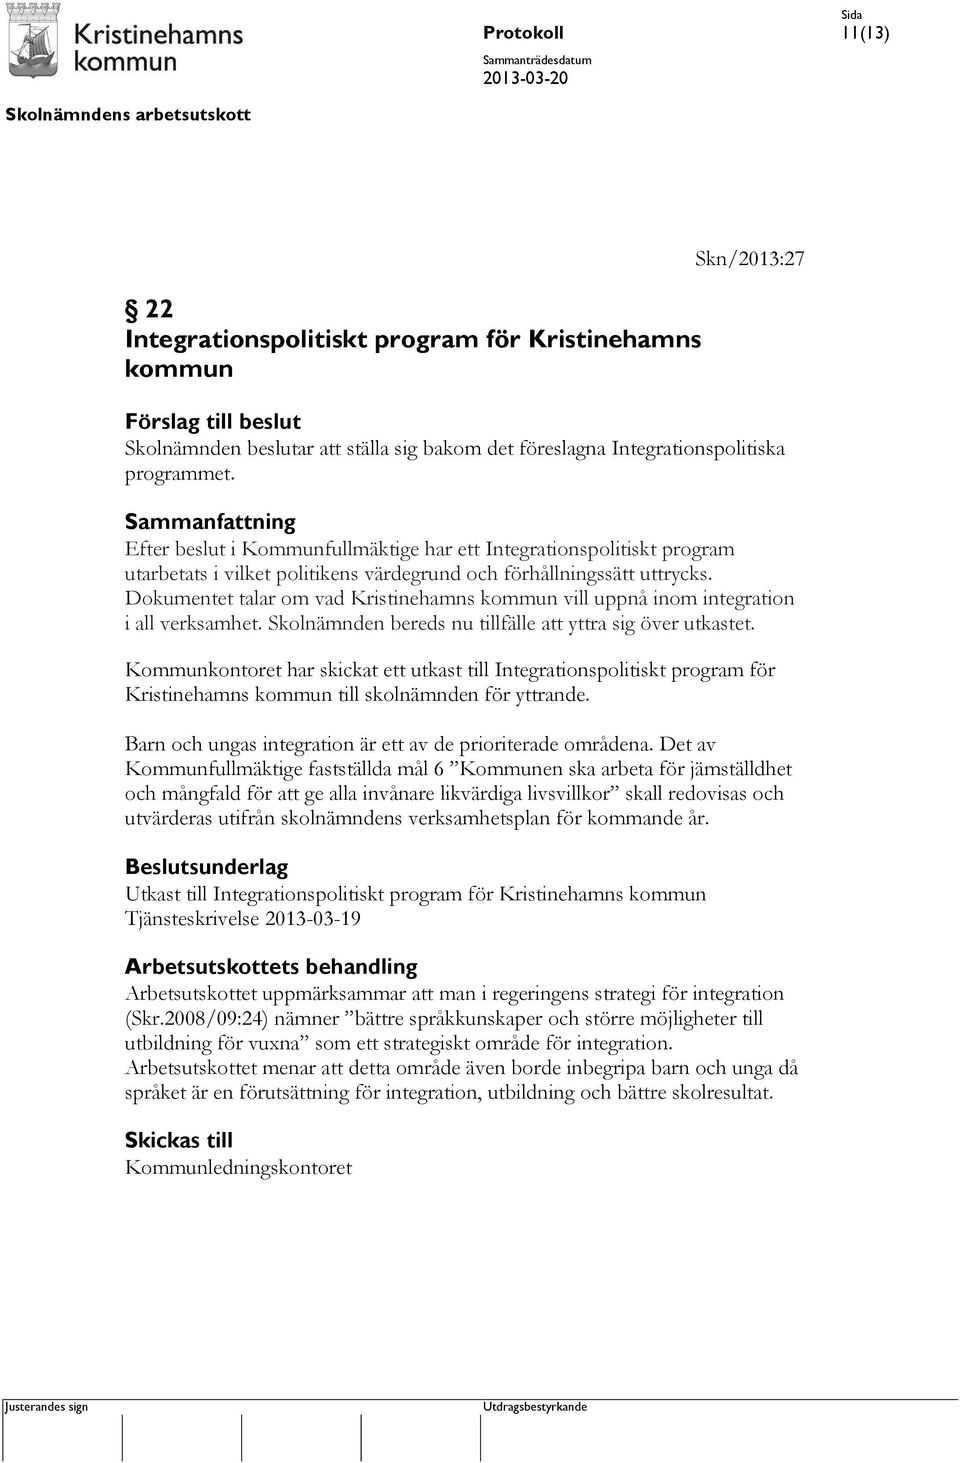 Dokumentet talar om vad Kristinehamns kommun vill uppnå inom integration i all verksamhet. Skolnämnden bereds nu tillfälle att yttra sig över utkastet.